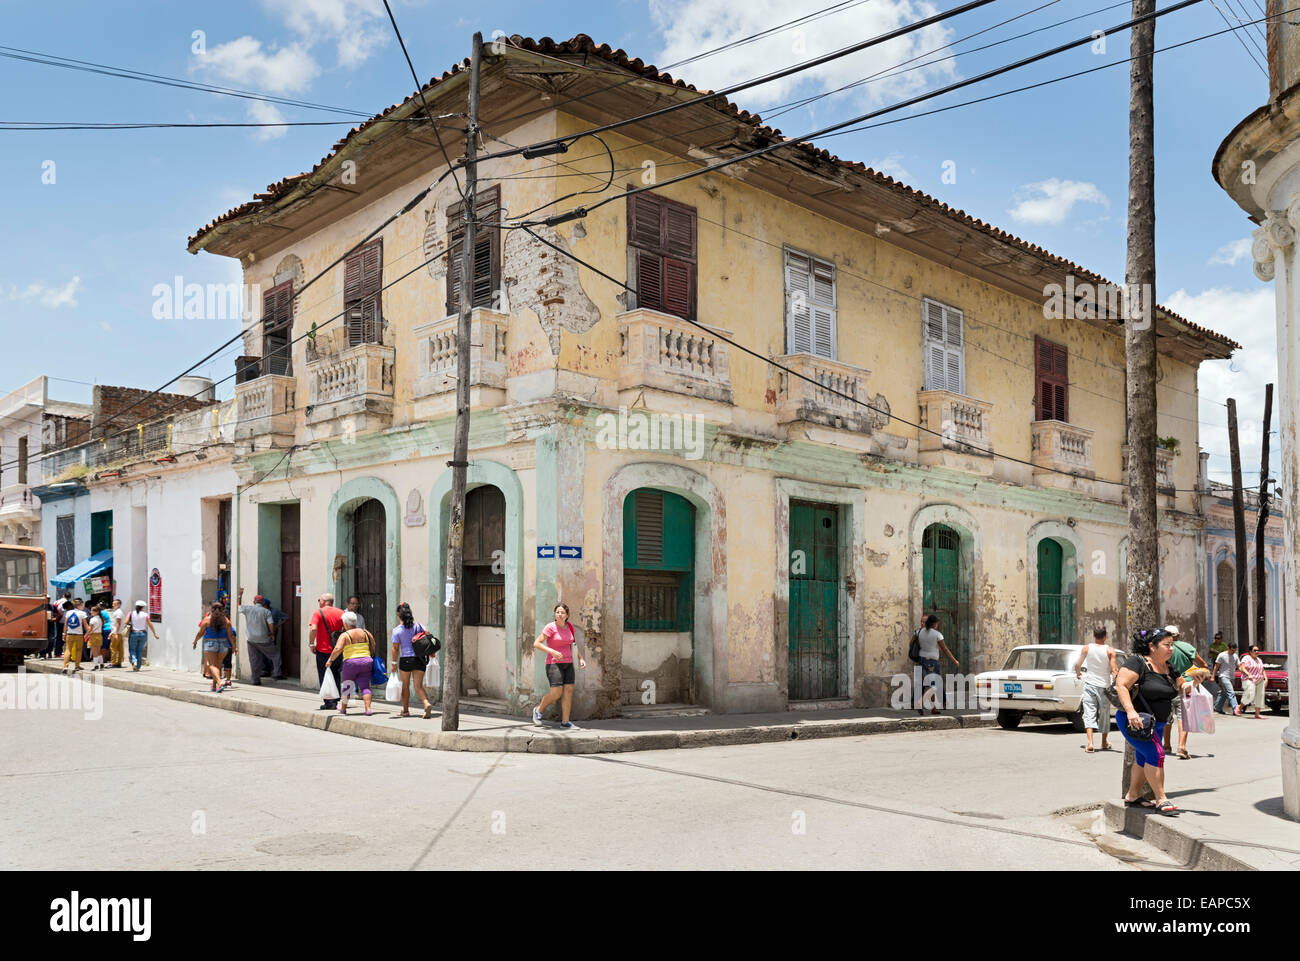 MATANZAS, Kuba - 10. Mai 2014: Menschen auf einer belebten Innenstadt Straße in der Stadt Matanzas, Kuba Stockfoto